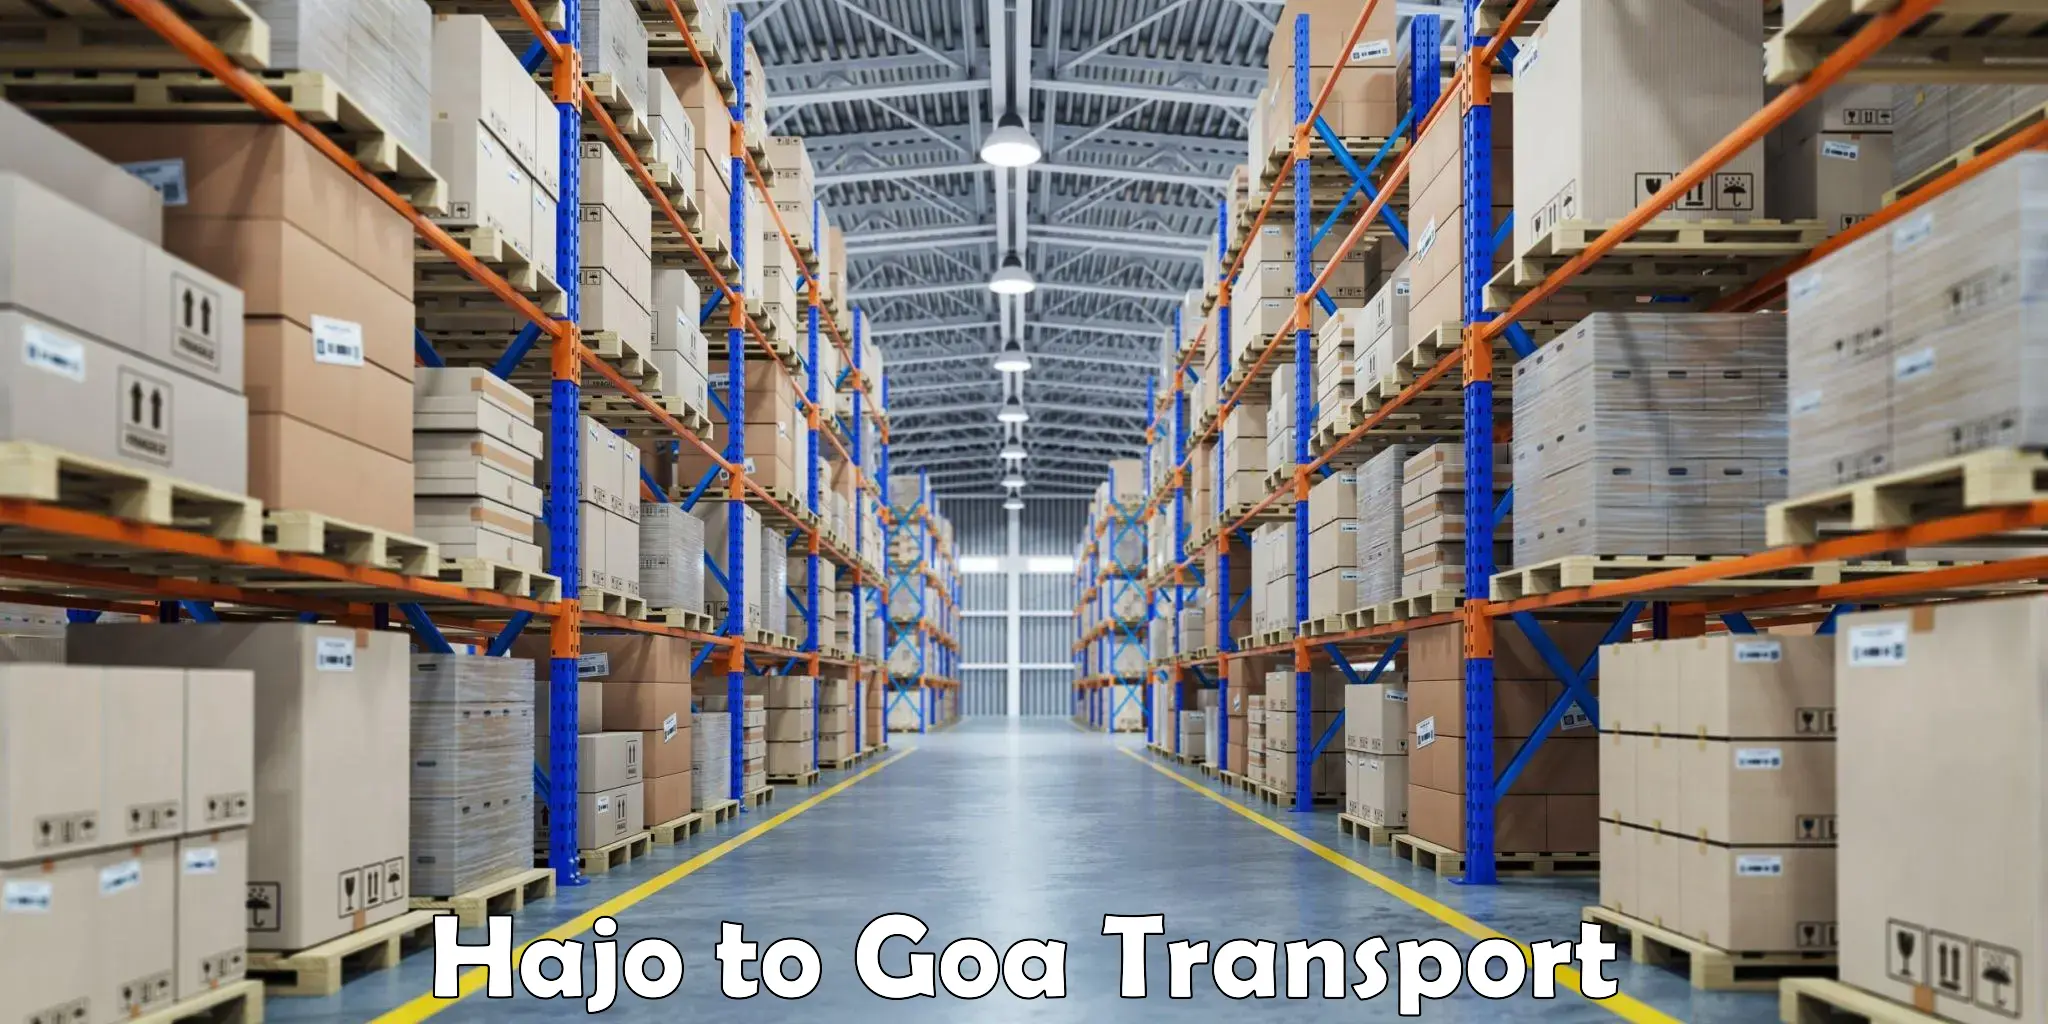 Lorry transport service Hajo to Goa